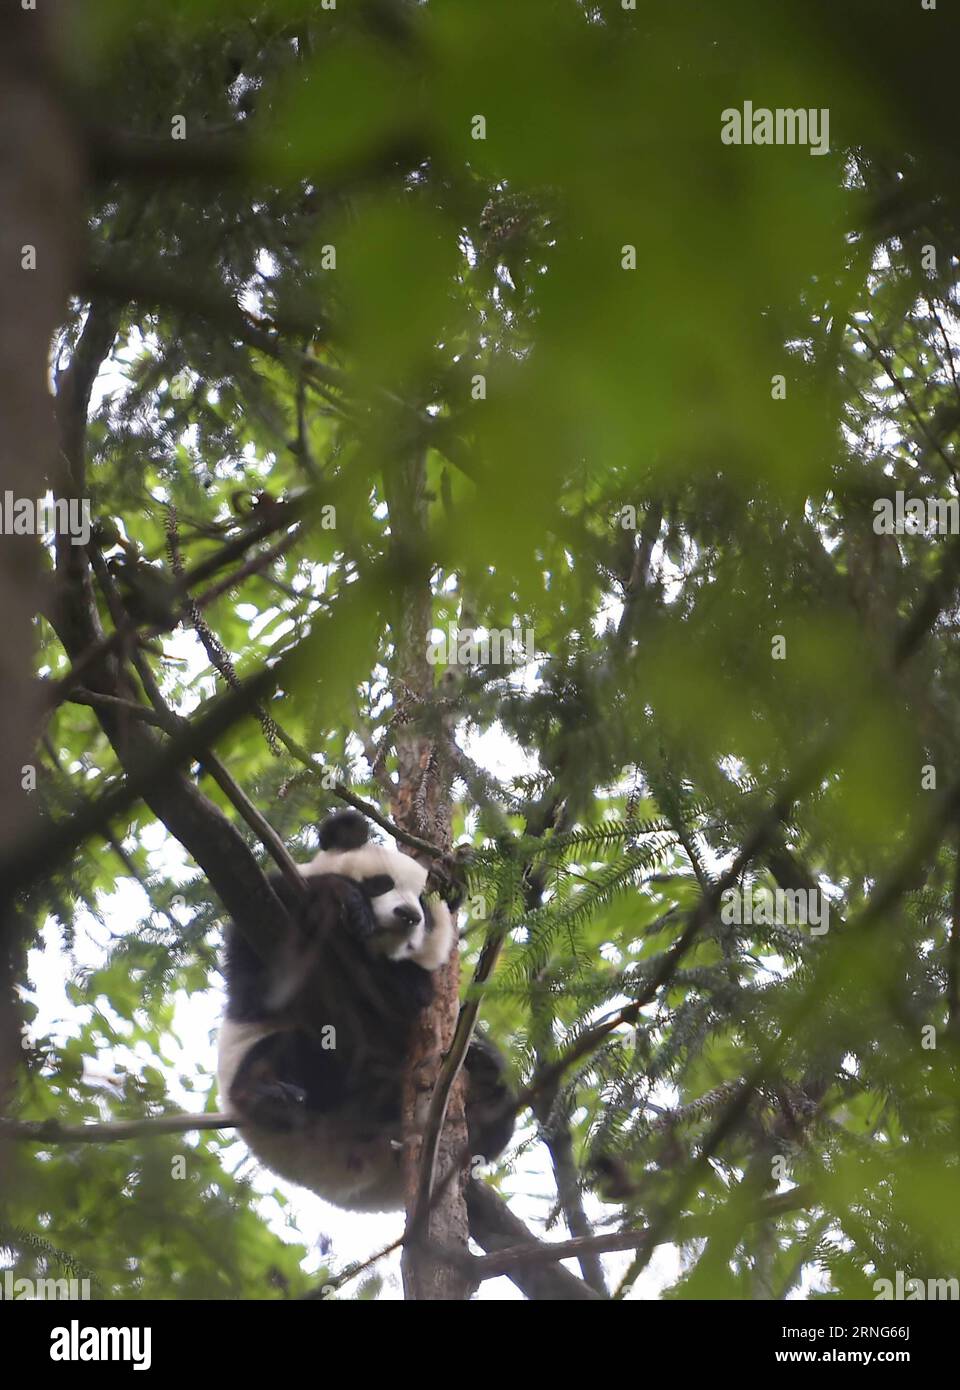 CHENGDU, 2016 -- das riesige Panda-Jungtier Yingxue lernt Kletterbäume in der Hetaoping Wild Training Base, südwestchinesische Provinz Sichuan, 29. August 2016. Die Riesenpanda Sixue wird ihr Junges Yingxue auf der Suche nach Nahrung und Wasser Schulen und dabei während der ersten Phase des Wildtrainings Raubtiere meiden. Mit der zunehmenden Anzahl von Pandas, die in Gefangenschaft gezüchtet und gehalten werden, begann China 2006, Pandas in Gefangenschaft in die Wildnis zu schicken, um die genetische Vielfalt und Qualität der Arten zu verbessern. ) (wx) CHINA-CHENGDU-RIESE PANDA-RÜCKKEHR ZUM WILDTRAINING (CN) XuexYubin PUBLICATIONxNOTxINxCHN Chengdu Stockfoto